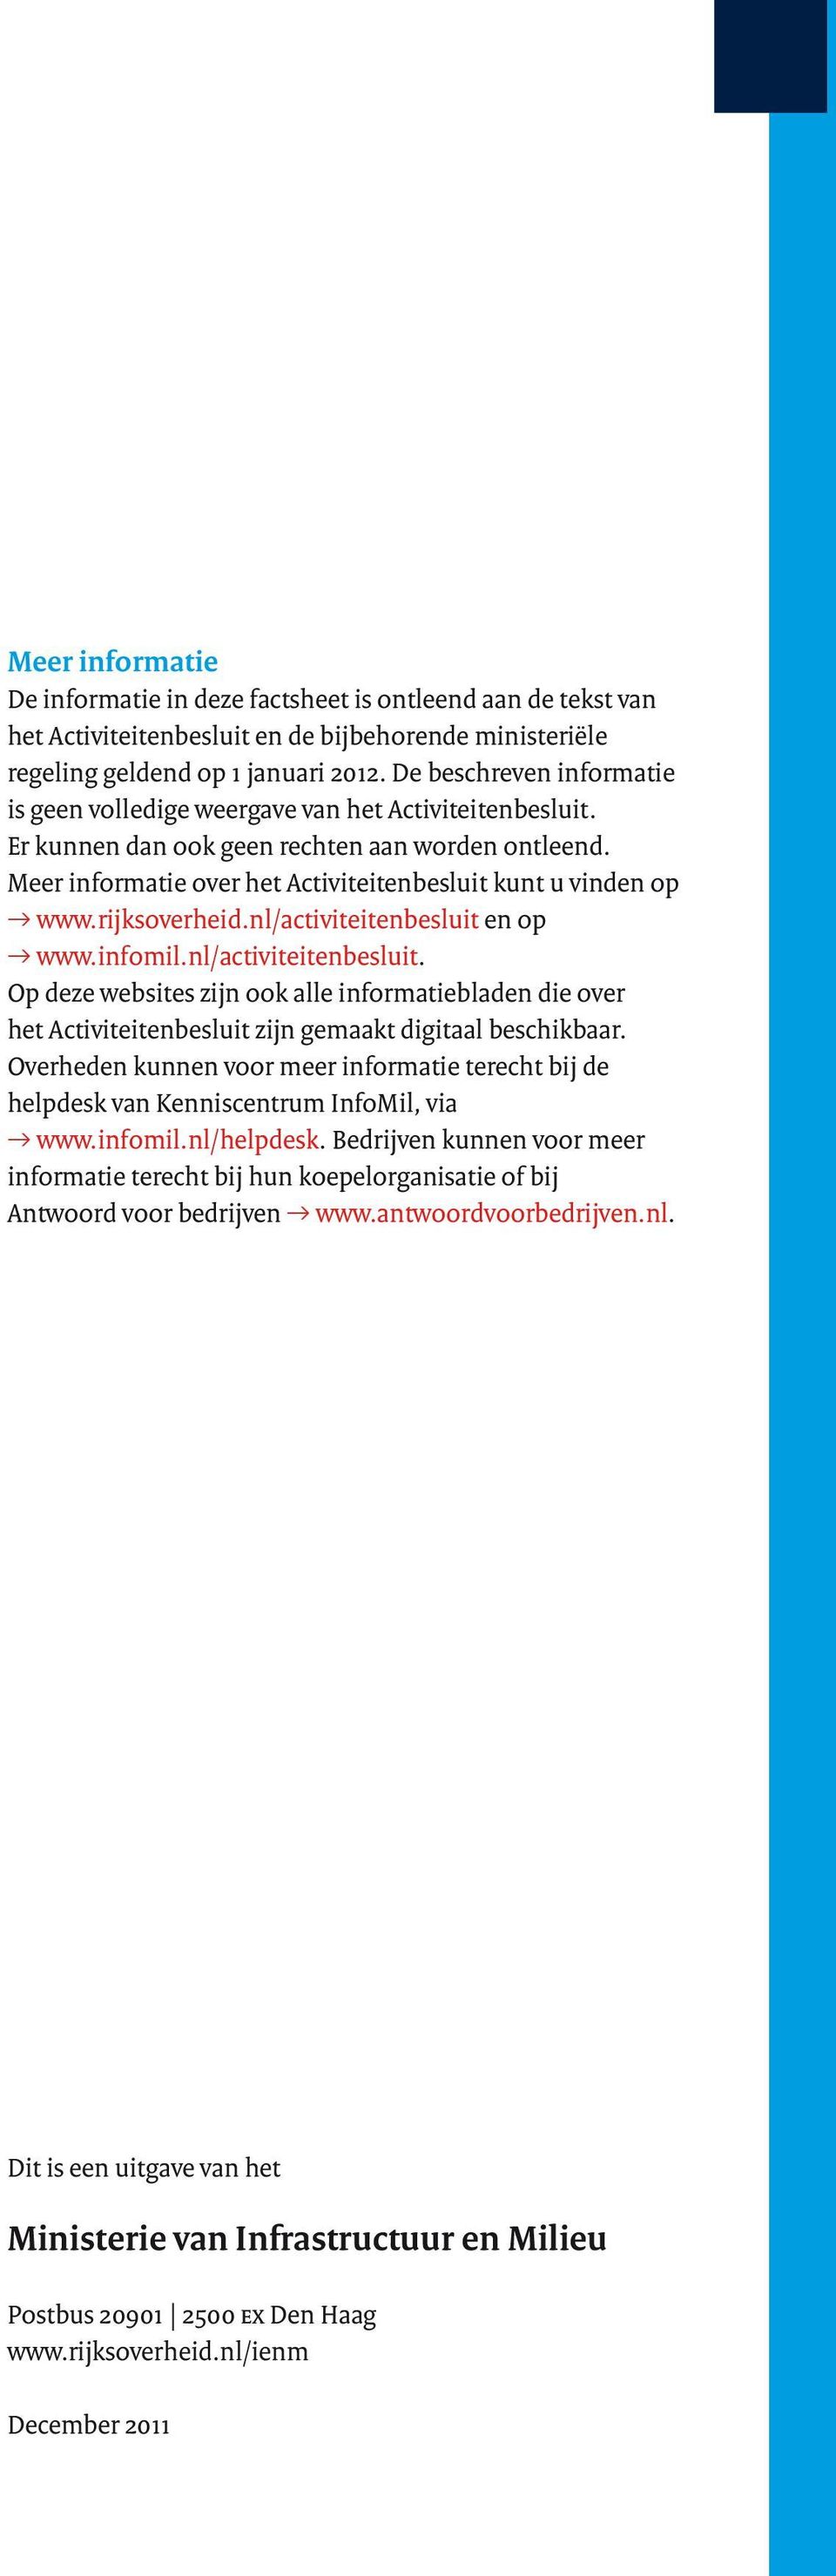 rijksoverheid.nl/activiteitenbesluit en op www.infomil.nl/activiteitenbesluit. Op deze websites zijn ook alle informatiebladen die over het Activiteitenbesluit zijn gemaakt digitaal beschikbaar.